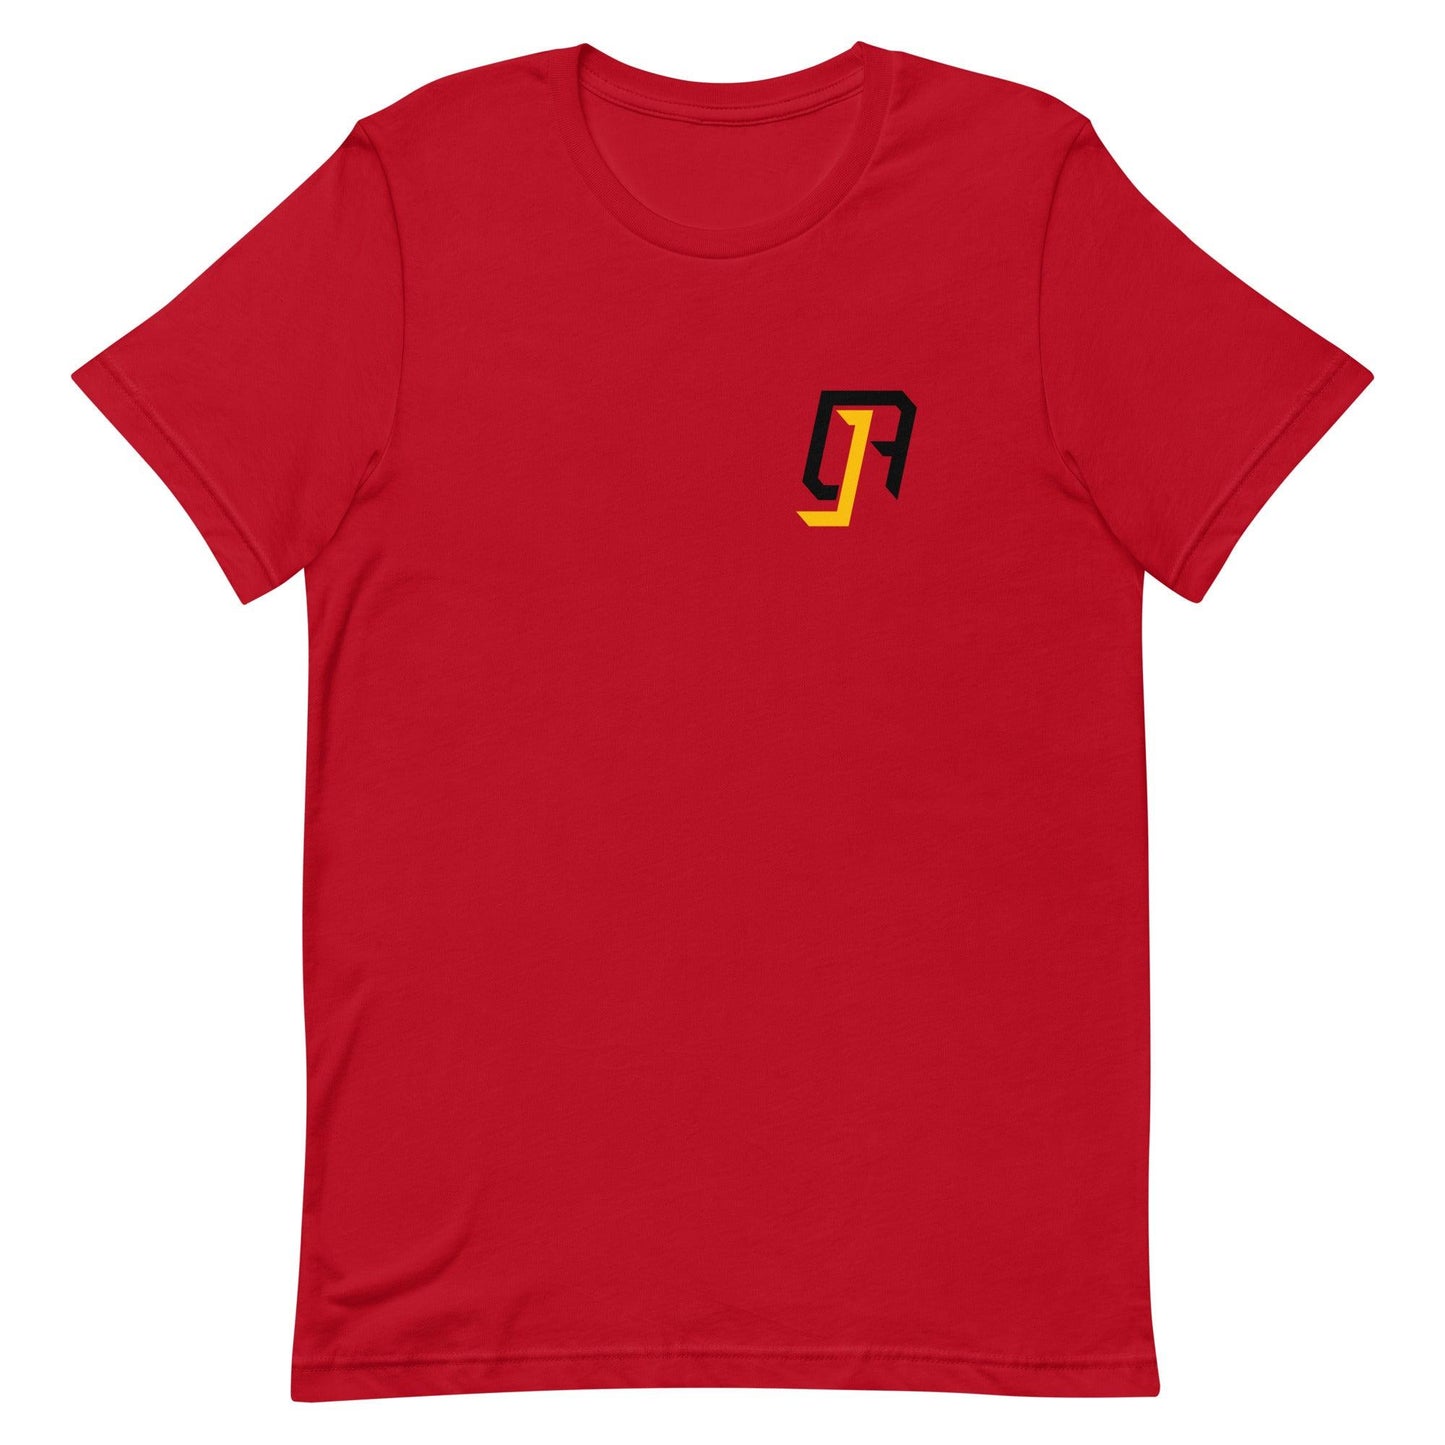 CJ Anthony "Essential" t-shirt - Fan Arch